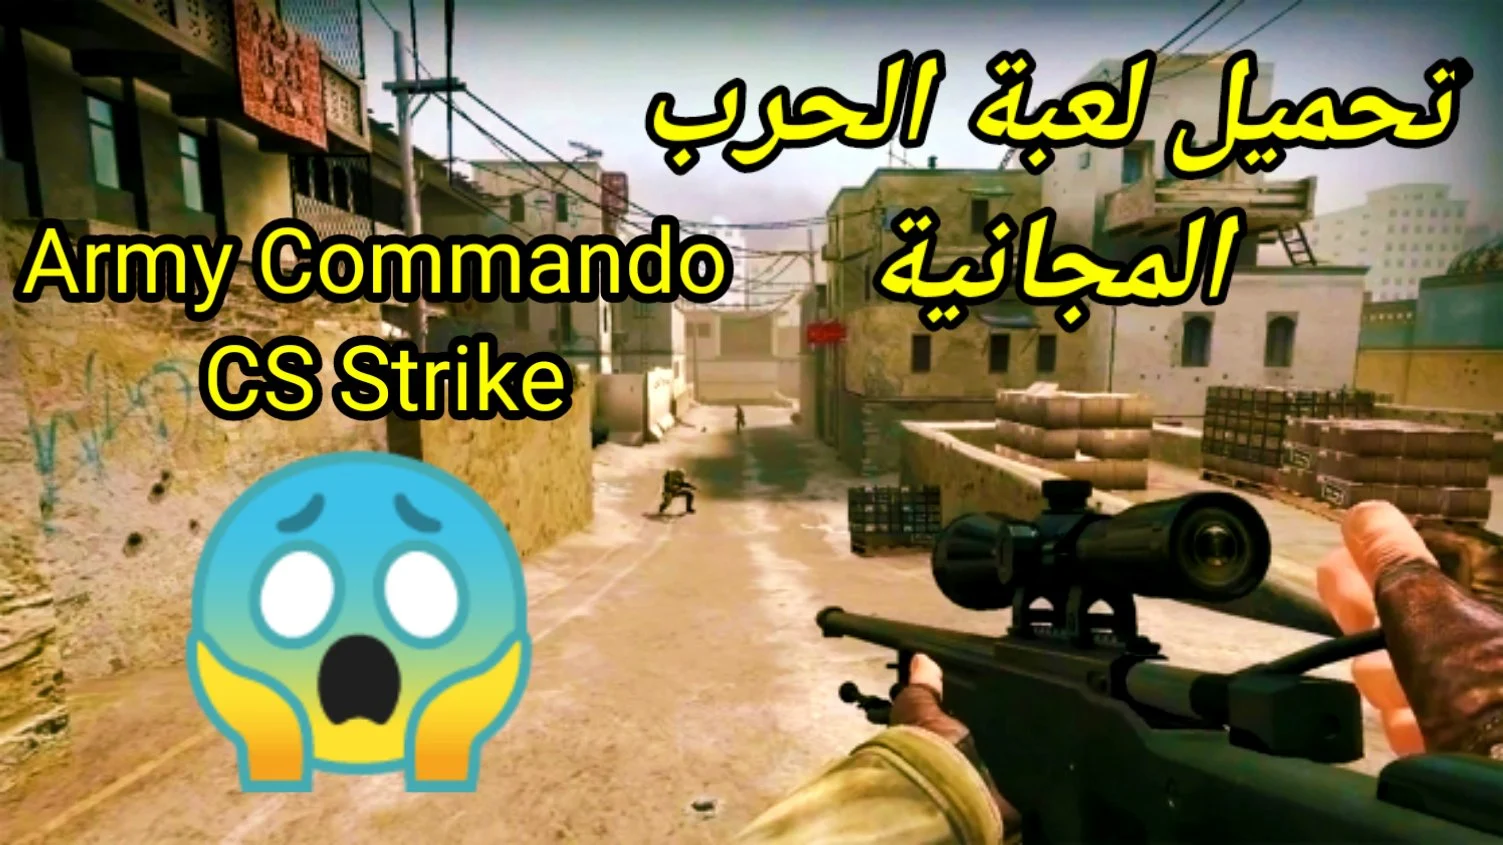  Army Commando CS Strike تحميل  المجانية